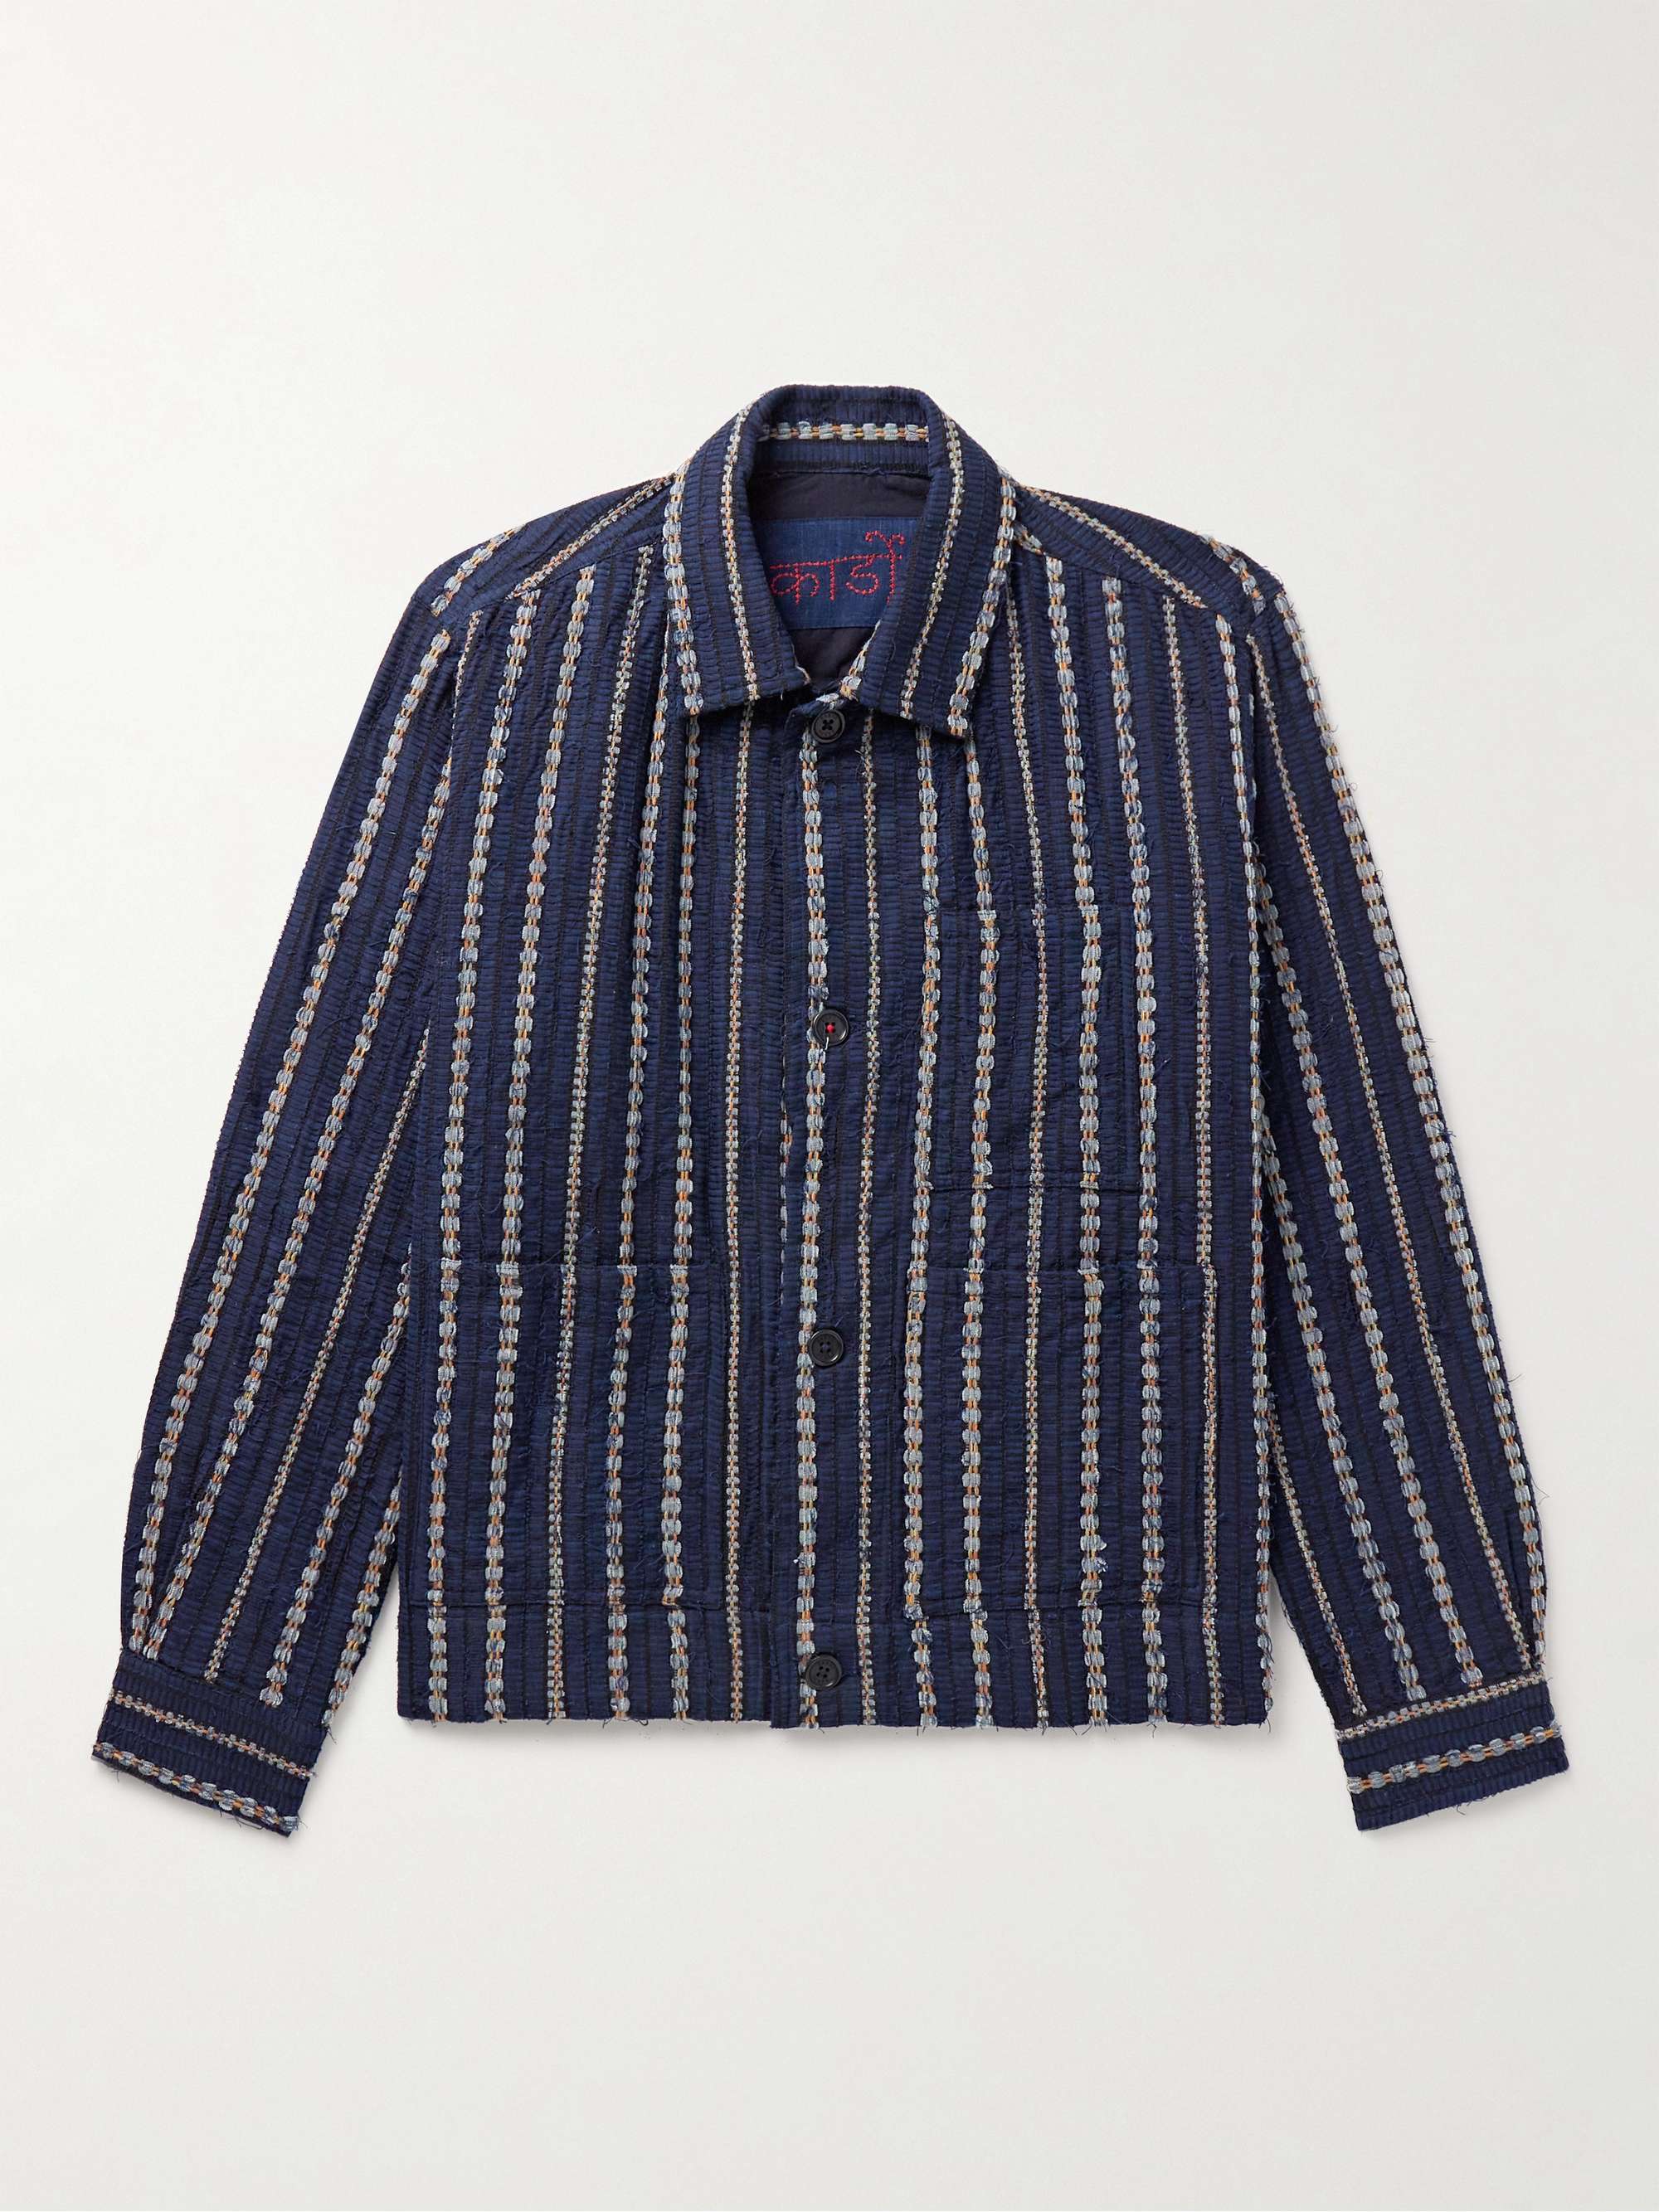 KARDO Bodhi Embroidered Cotton Jacket for Men | MR PORTER